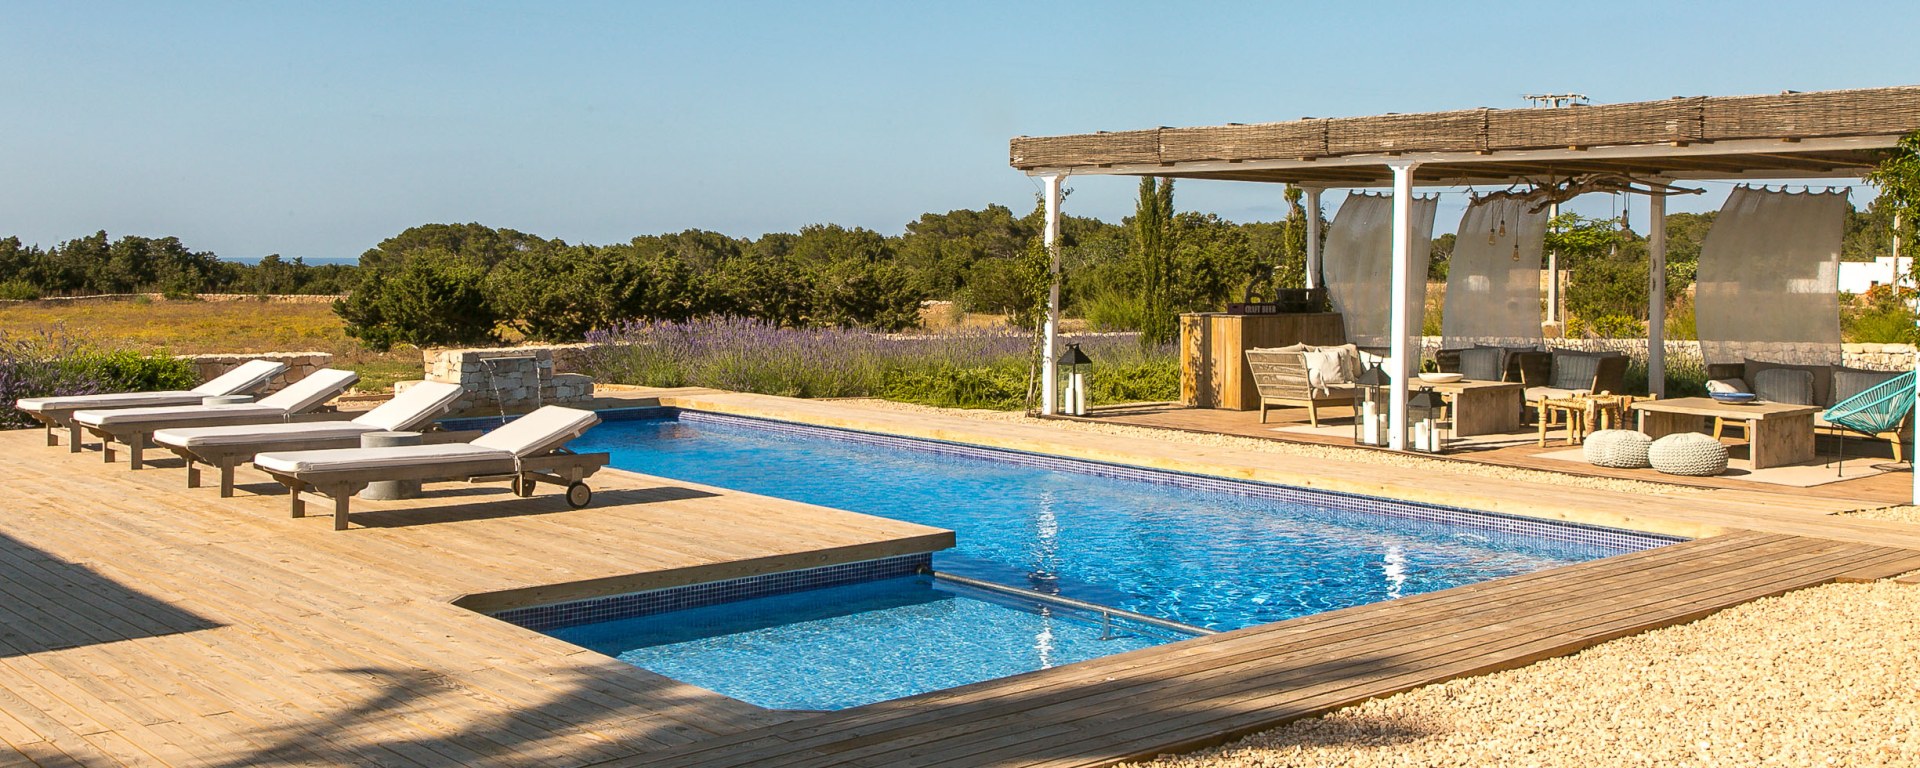 Luxusreise Formentera - Urlaub im Ferienhaus Formentera